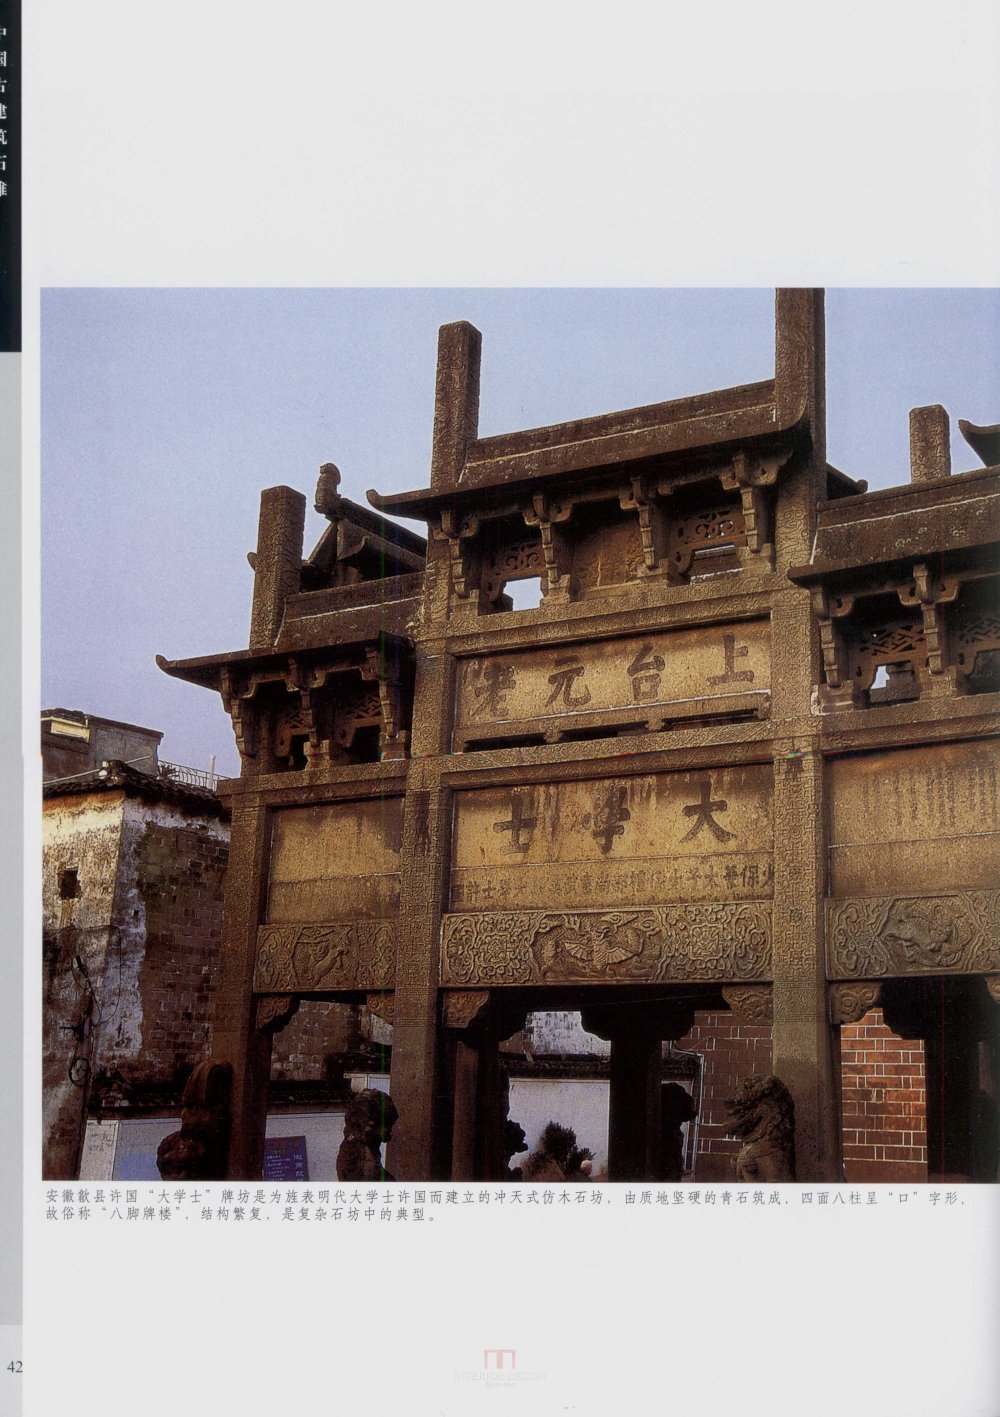 中国古代建筑 石雕_kobe 0050.jpg